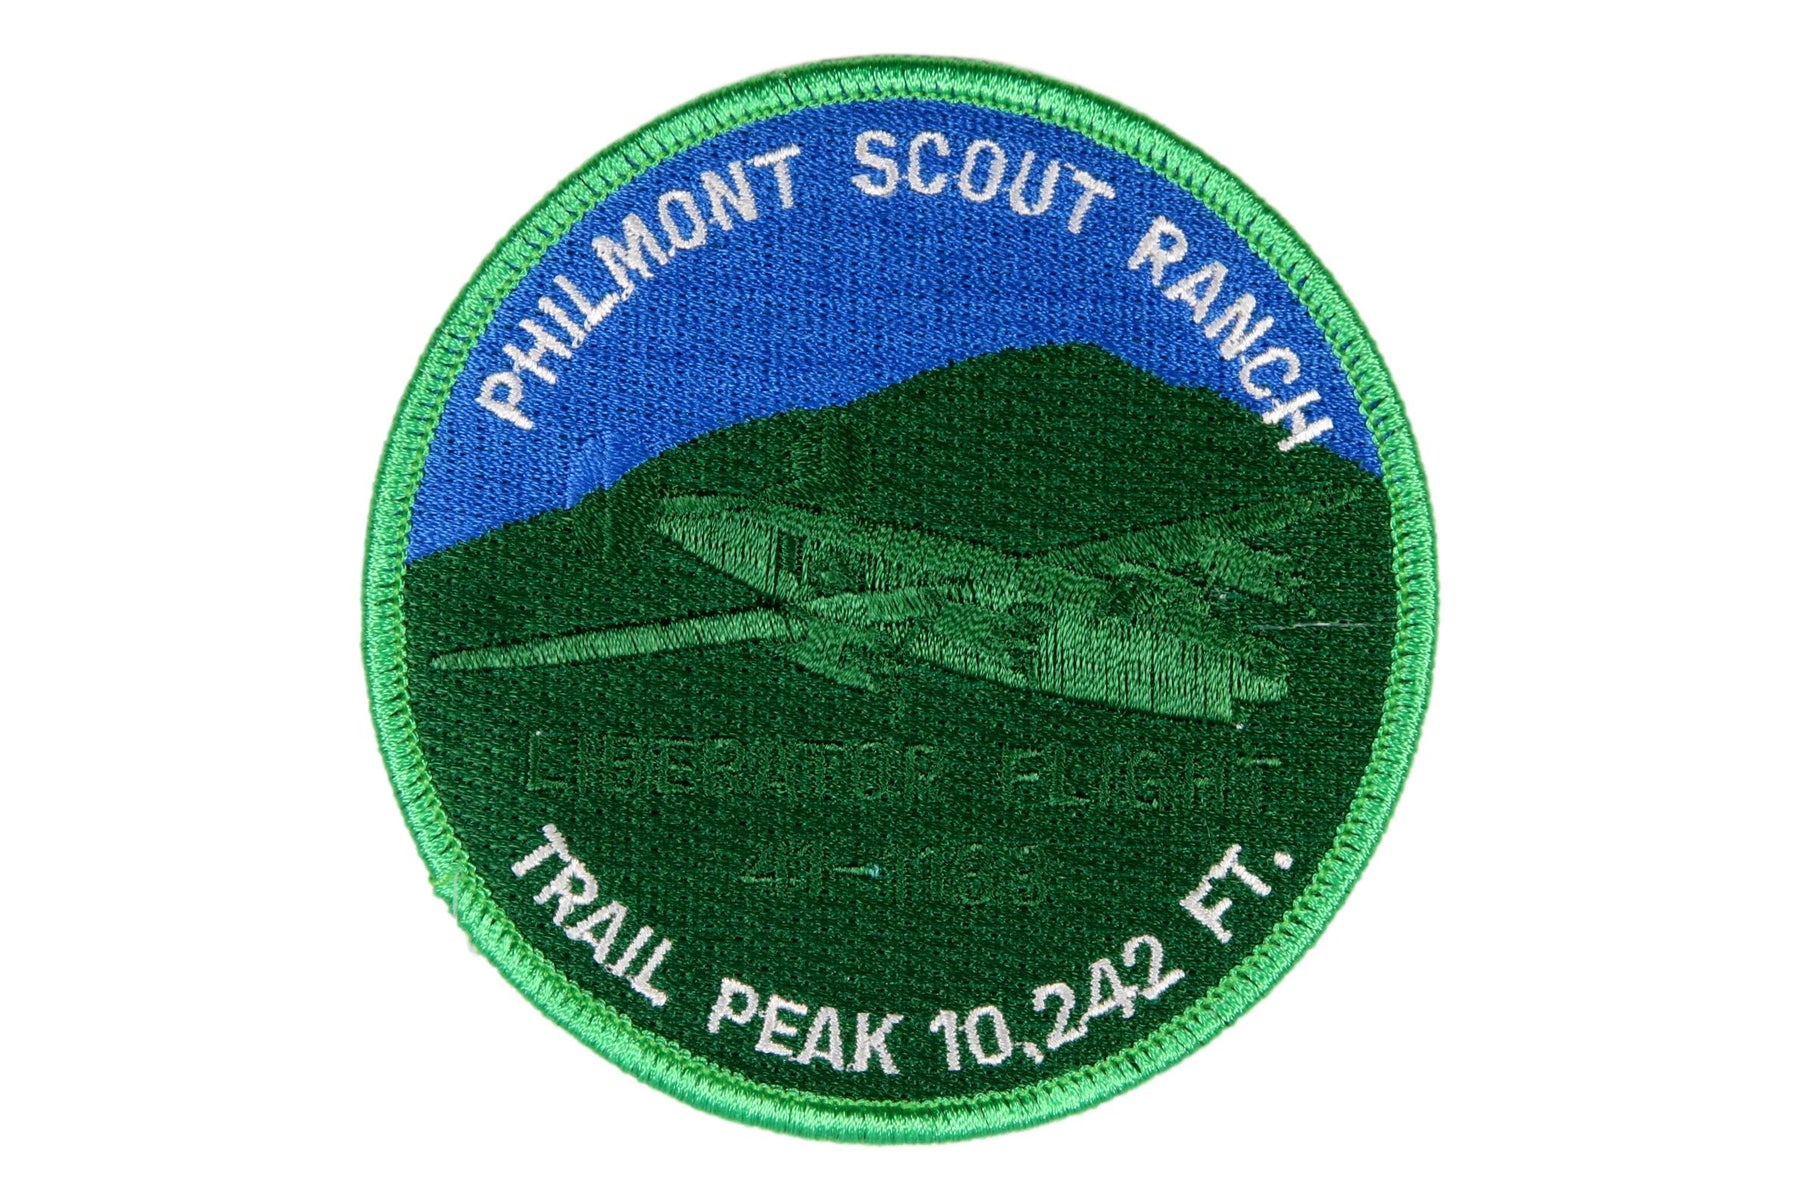 Philmont Trail Peak 10,242 Patch